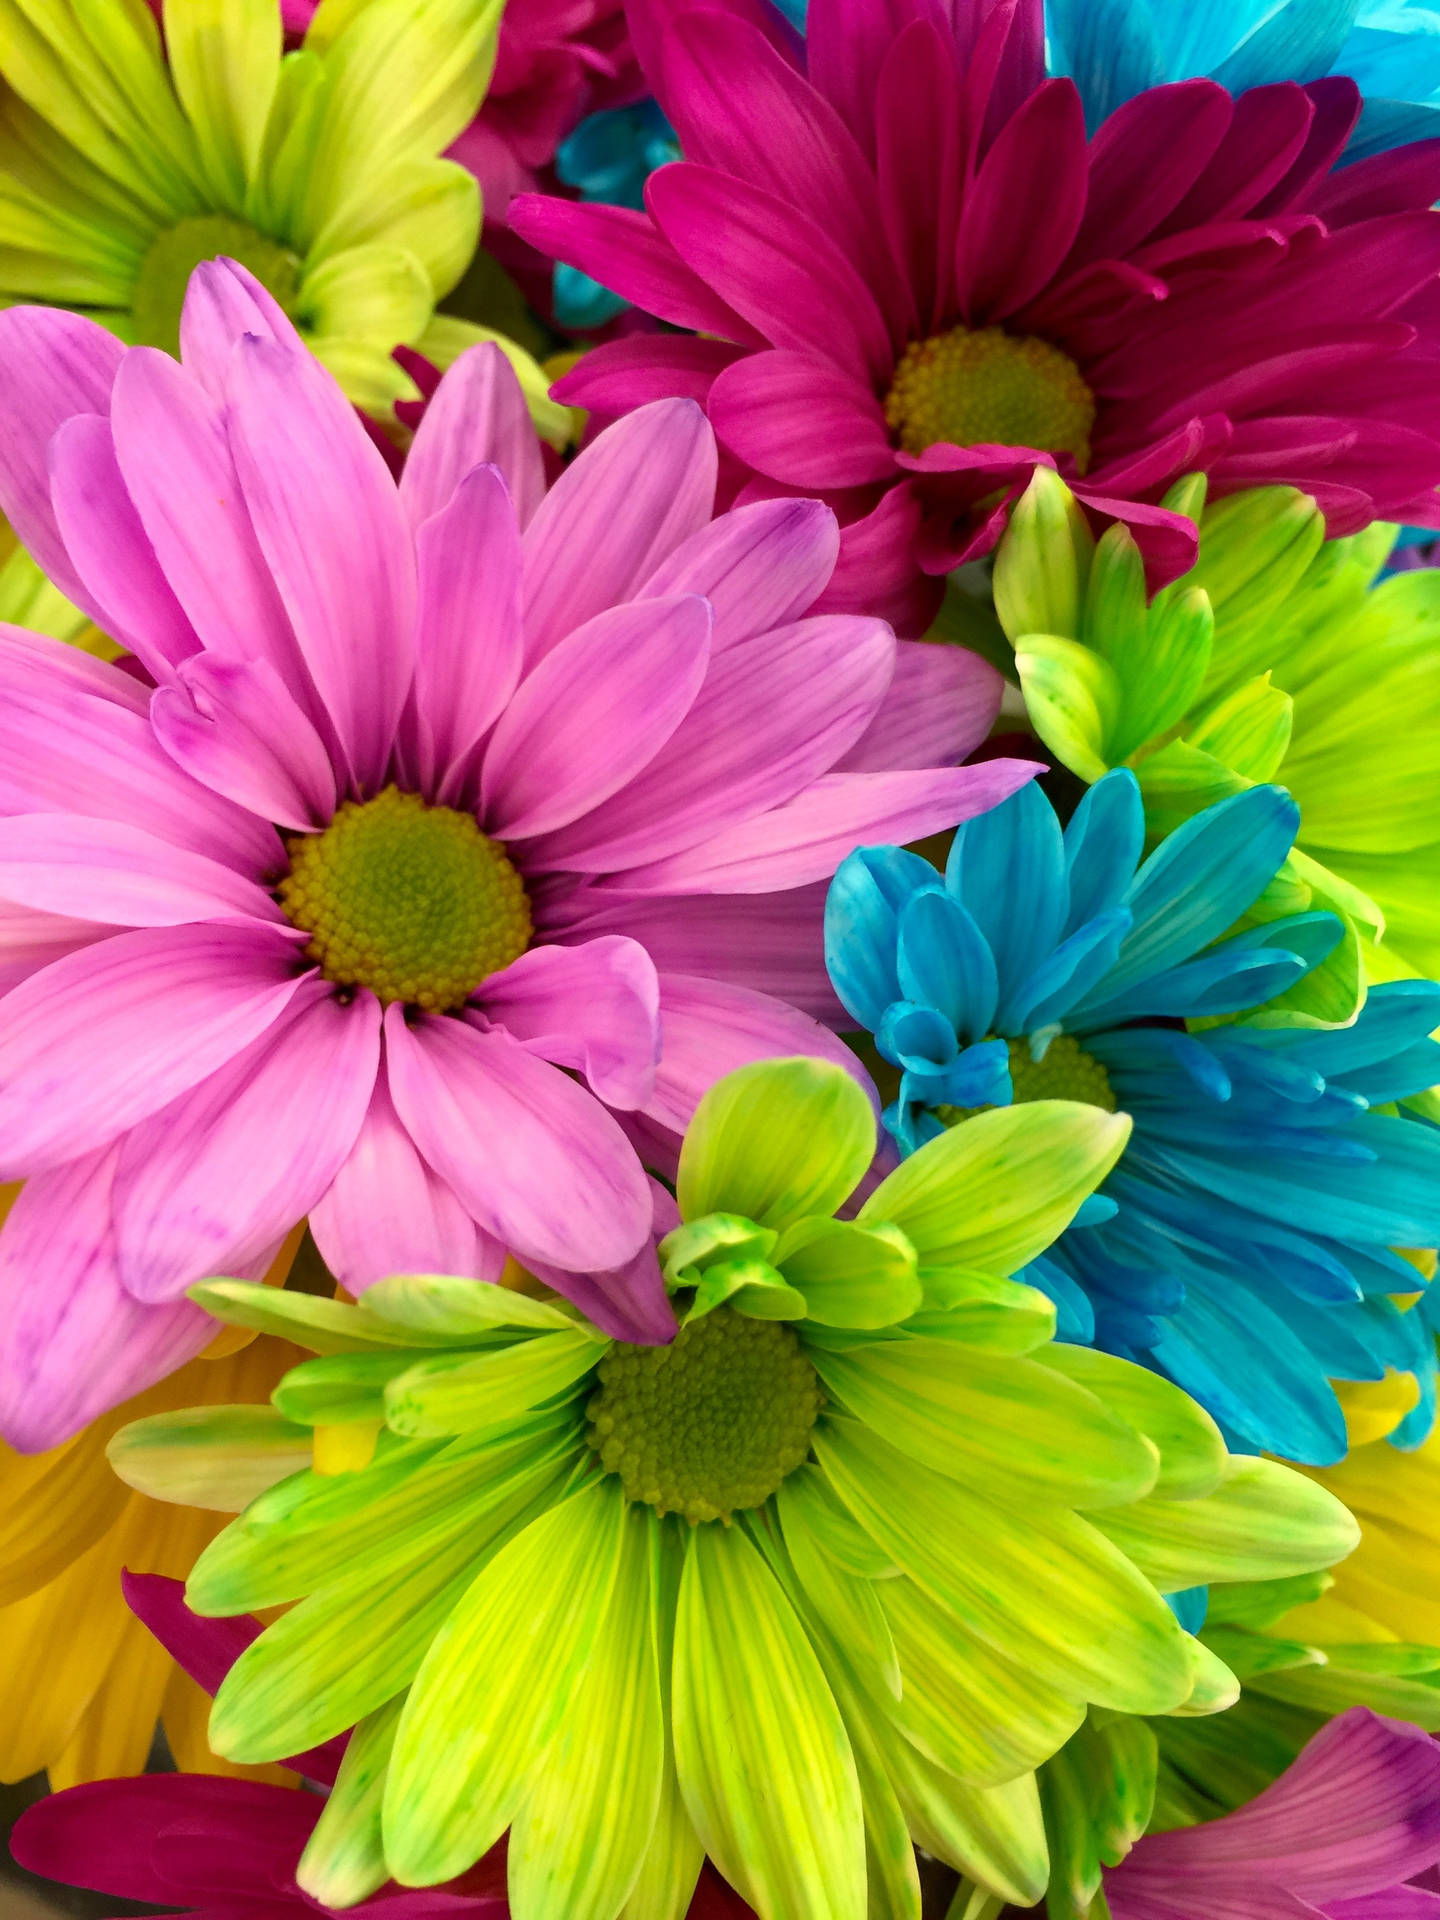 Pantallacompleta 4k Flores Arcoíris Margaritas Fondo de pantalla